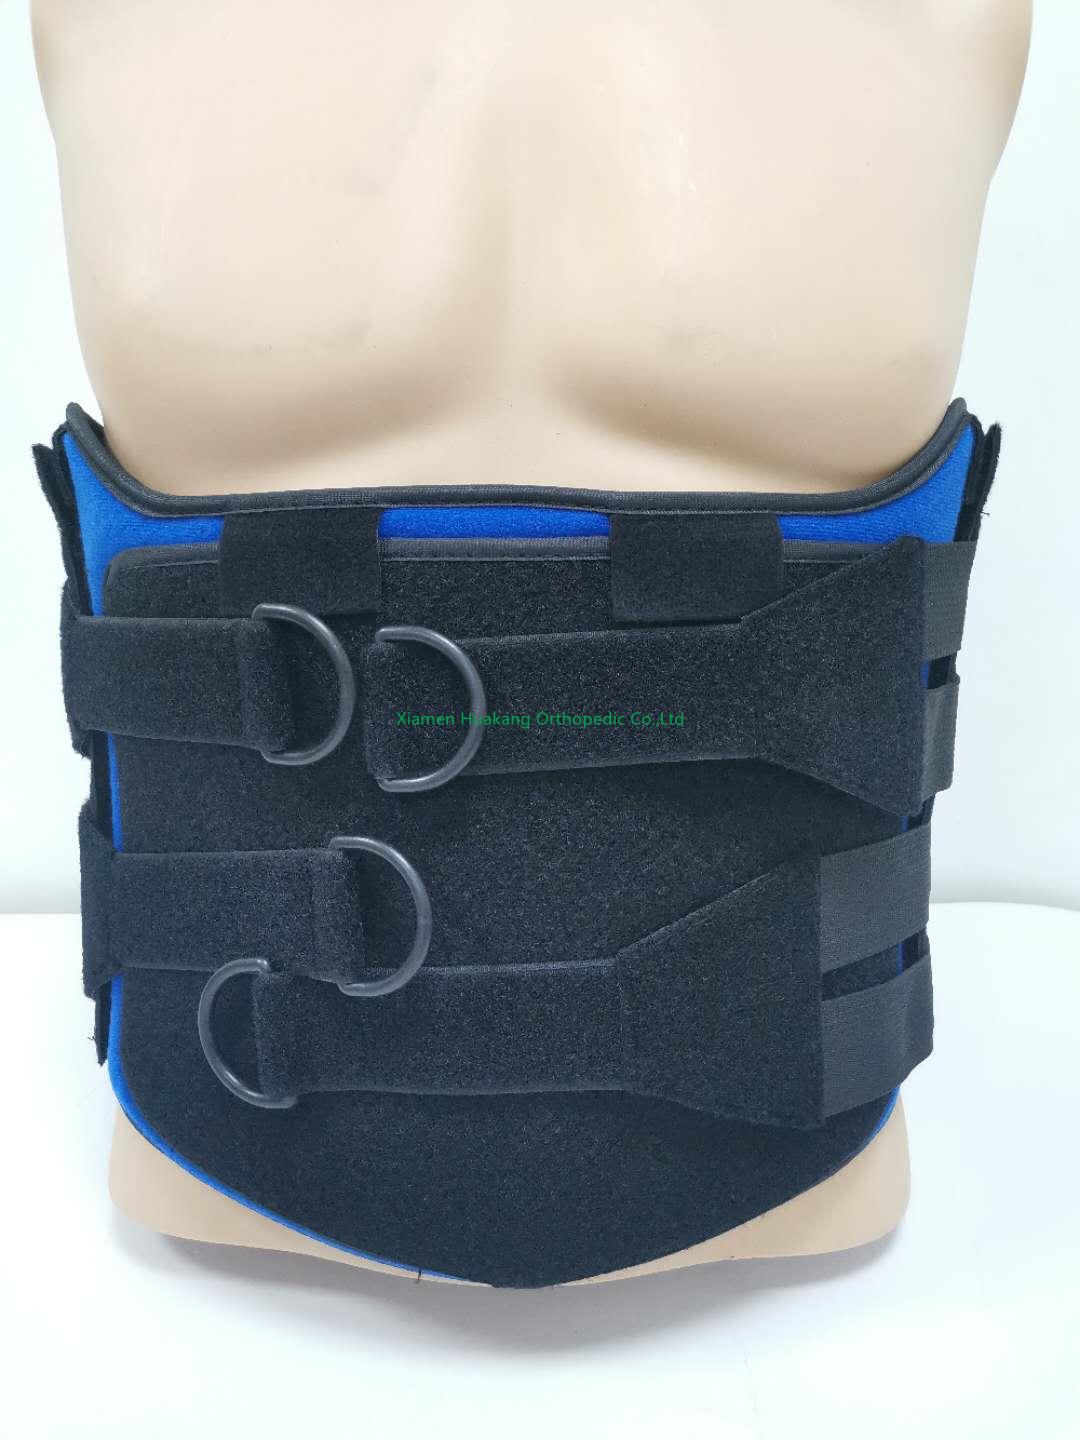 lumbo-sacral back brace waist belt